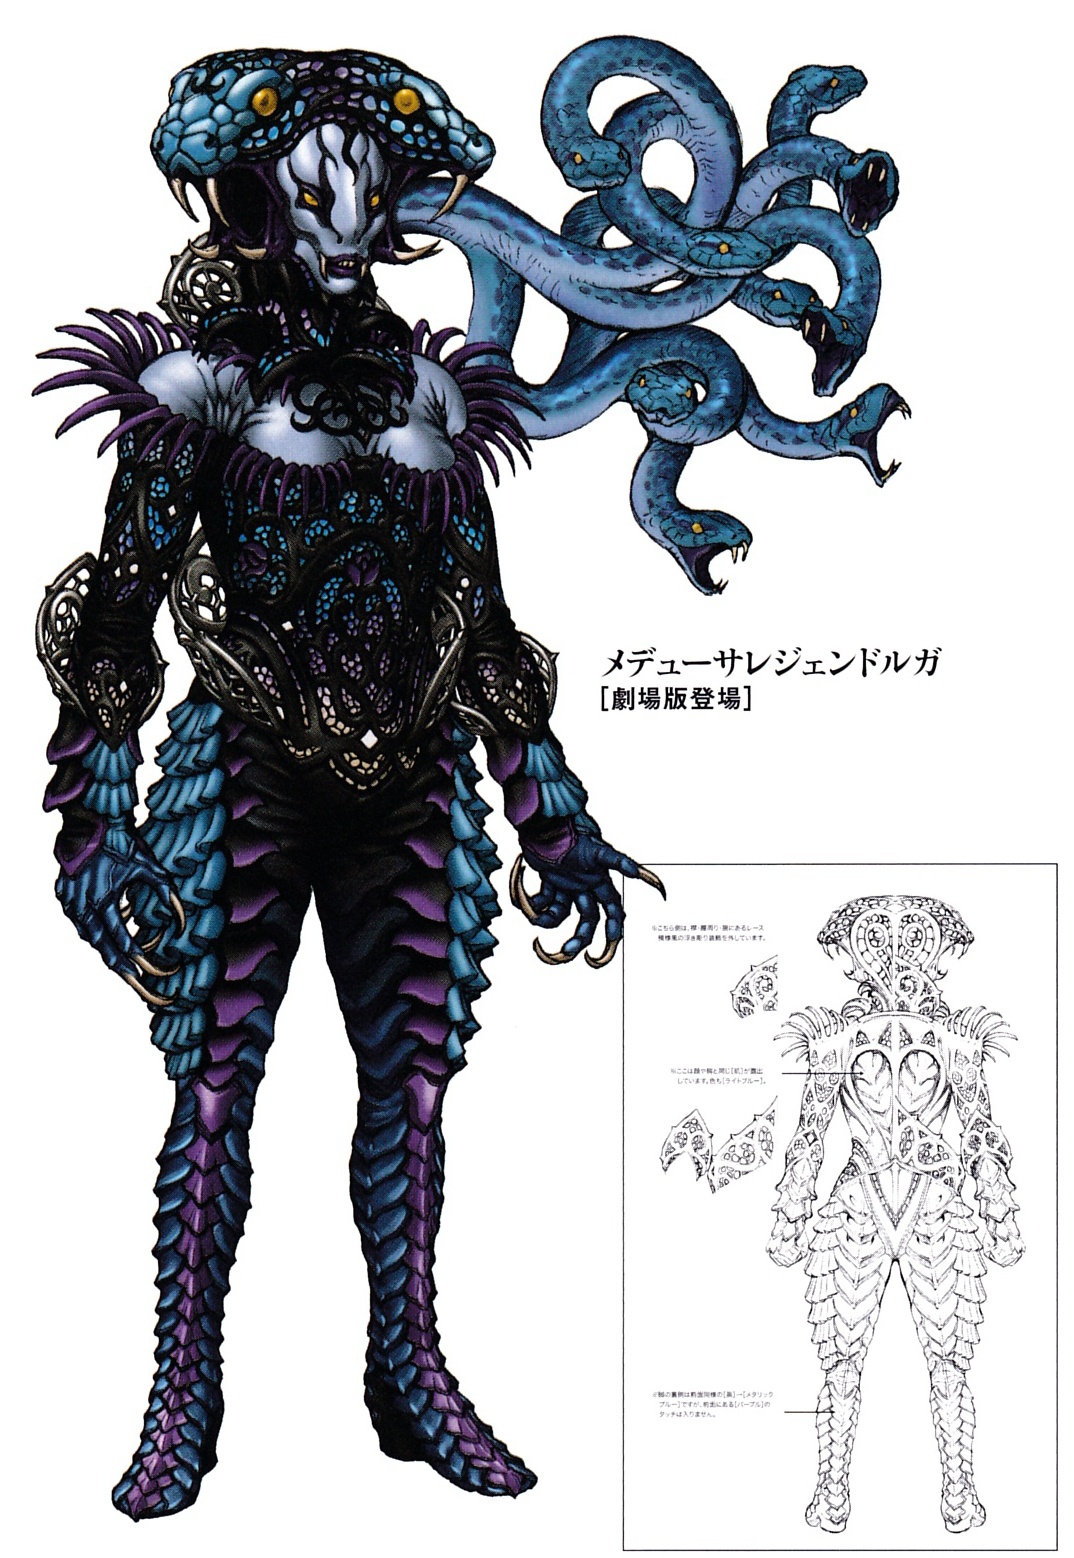 Medusa Queen of Gorgons – GoldenGrottoAR